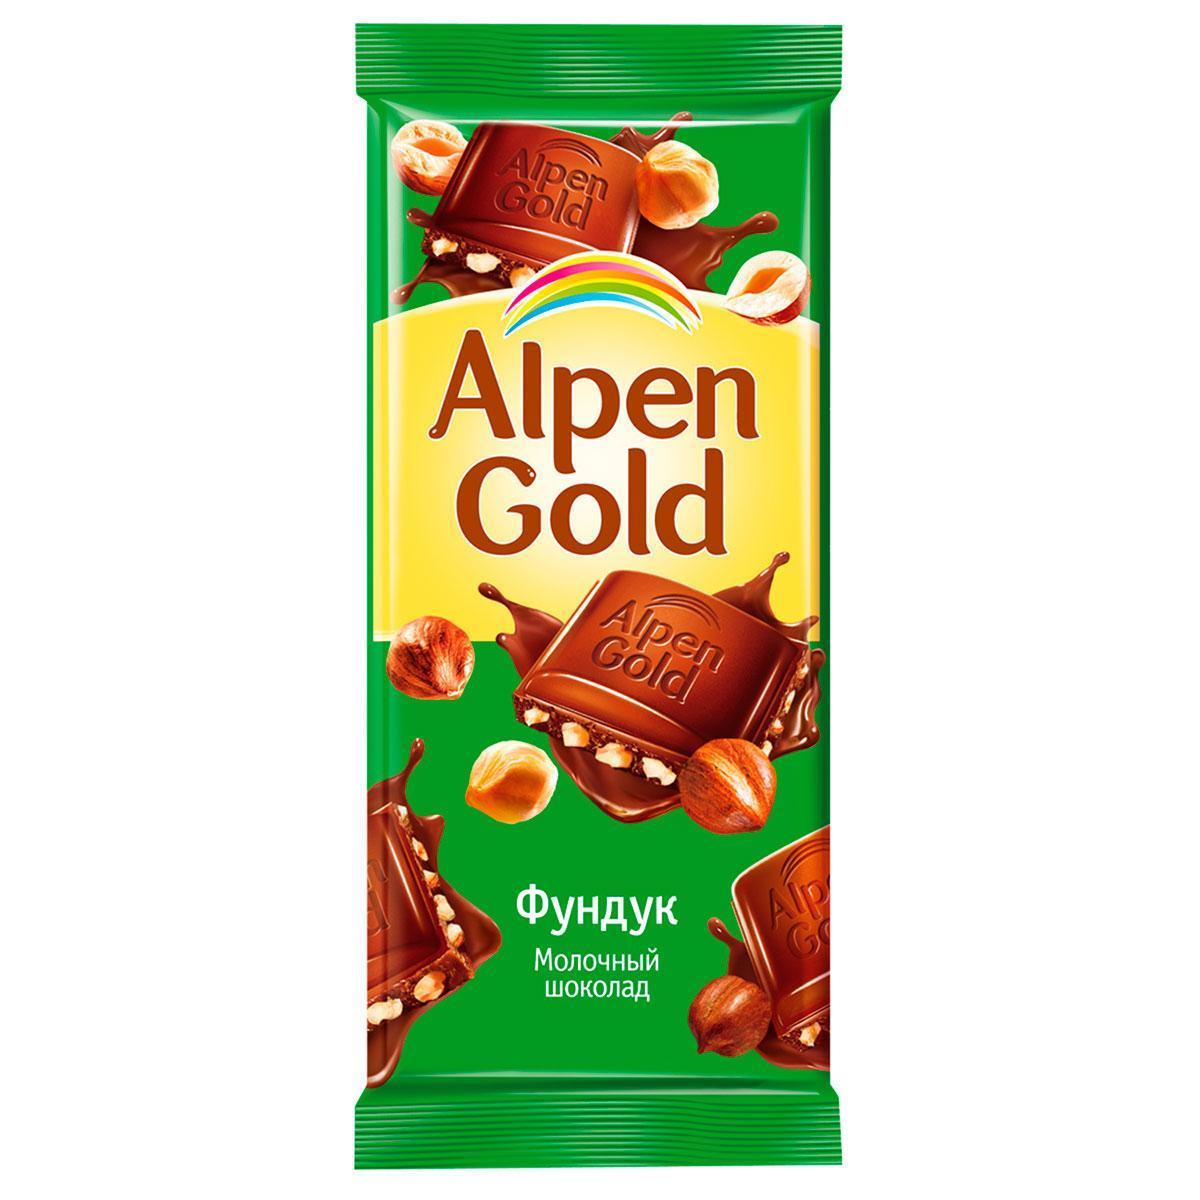 Шоколад молочный ALPEN GOLD с дробленым фундуком 85 гр., флоу-пак